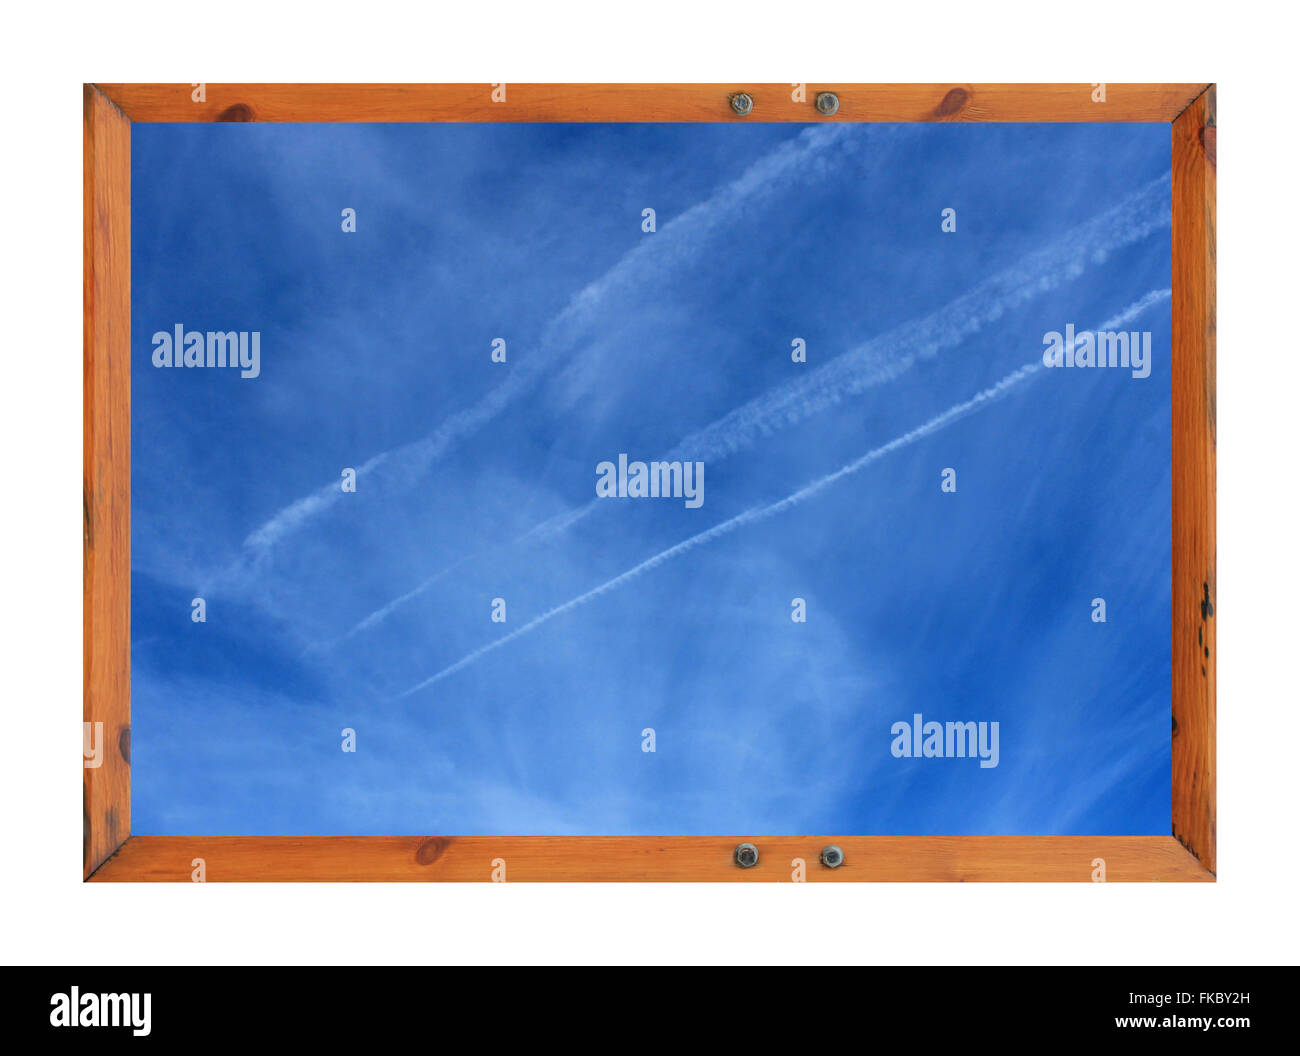 Vue panoramique des traînées de vapeur blanche dans le ciel bleu entouré d'un cadre photo en bois. Banque D'Images